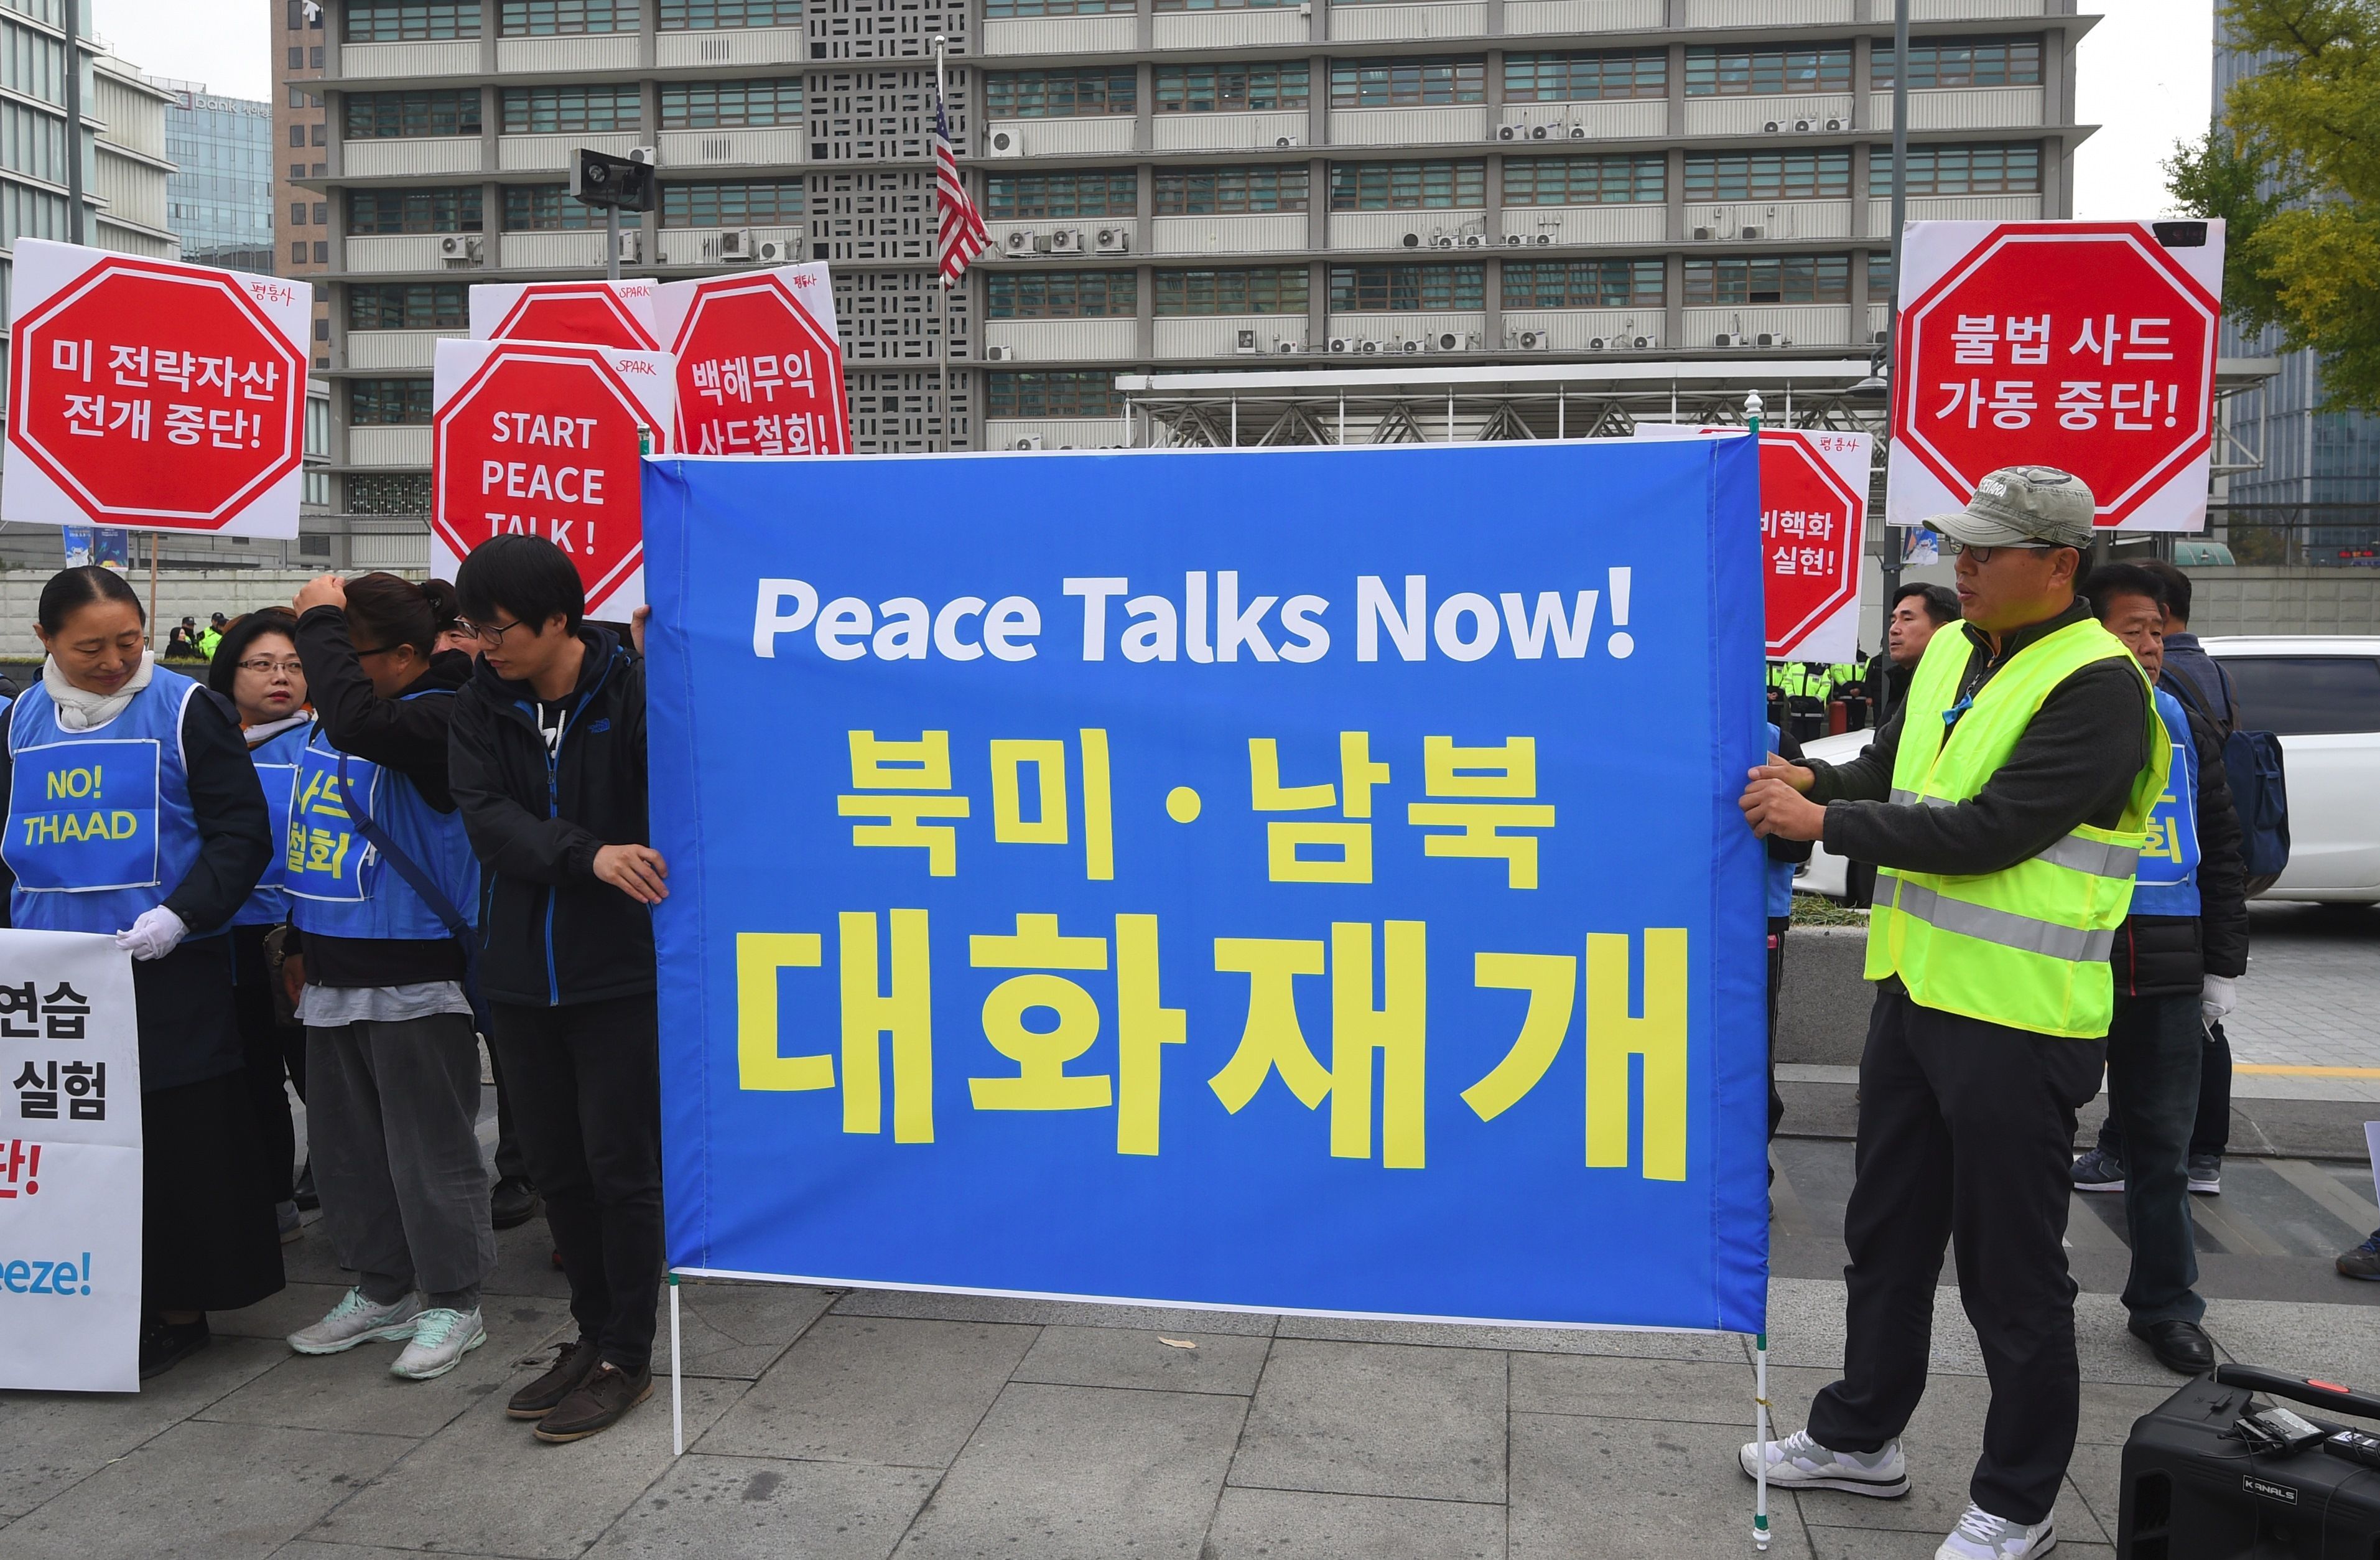 تظاهرات ضد ترامب فى كوريا الجنوبية